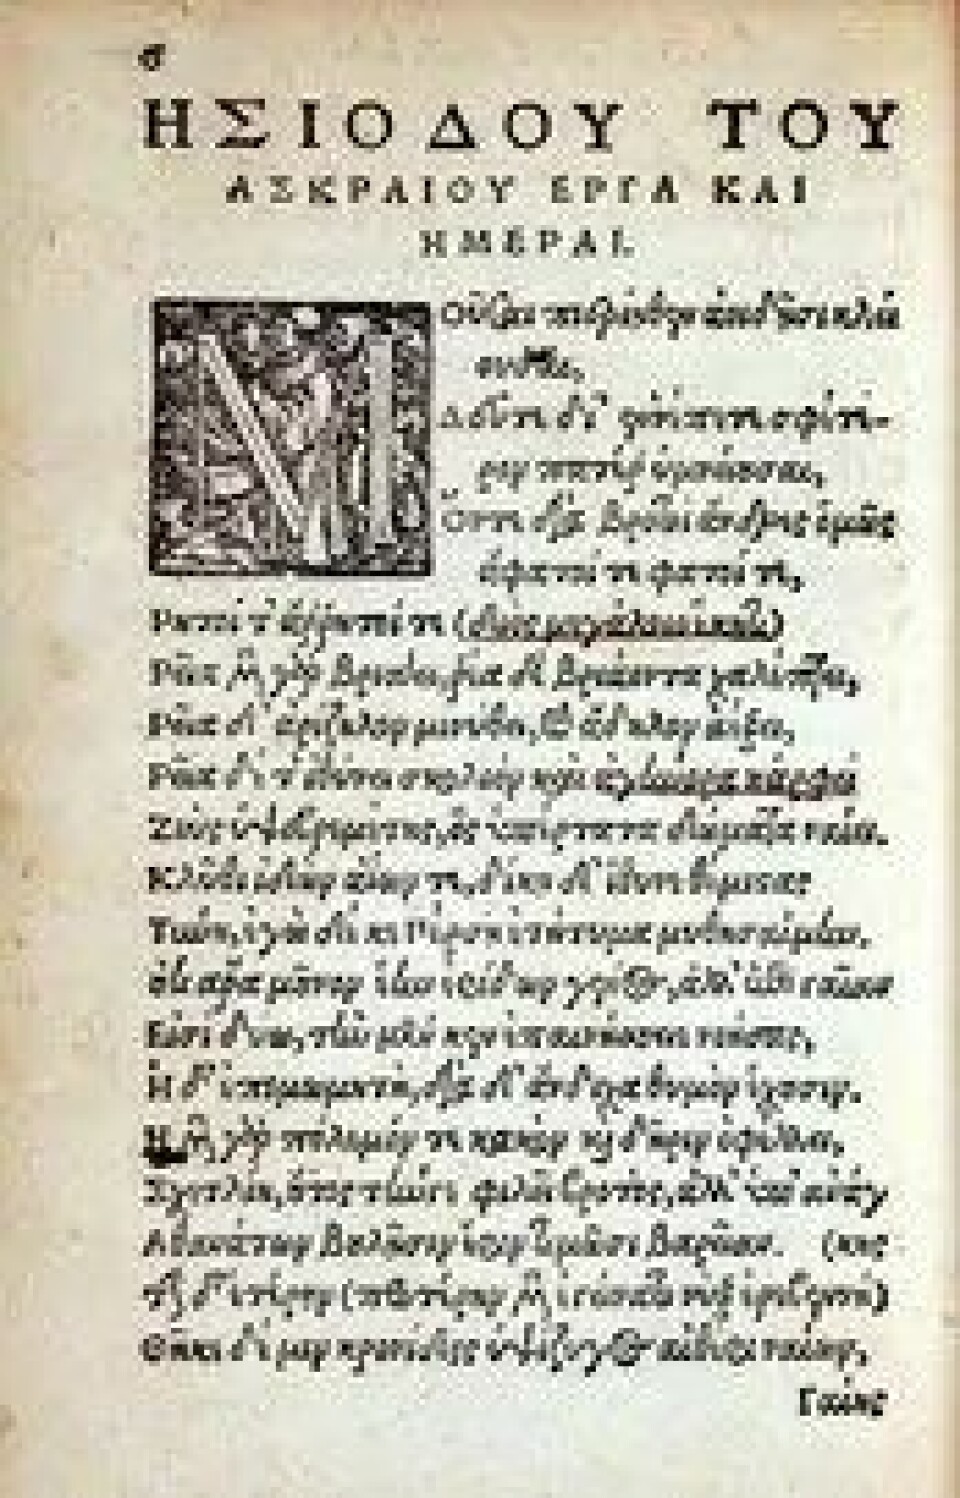 Arbeid og dager i en utgave fra 1539. (Kilde: Wikimedia commons CC0 1.0)